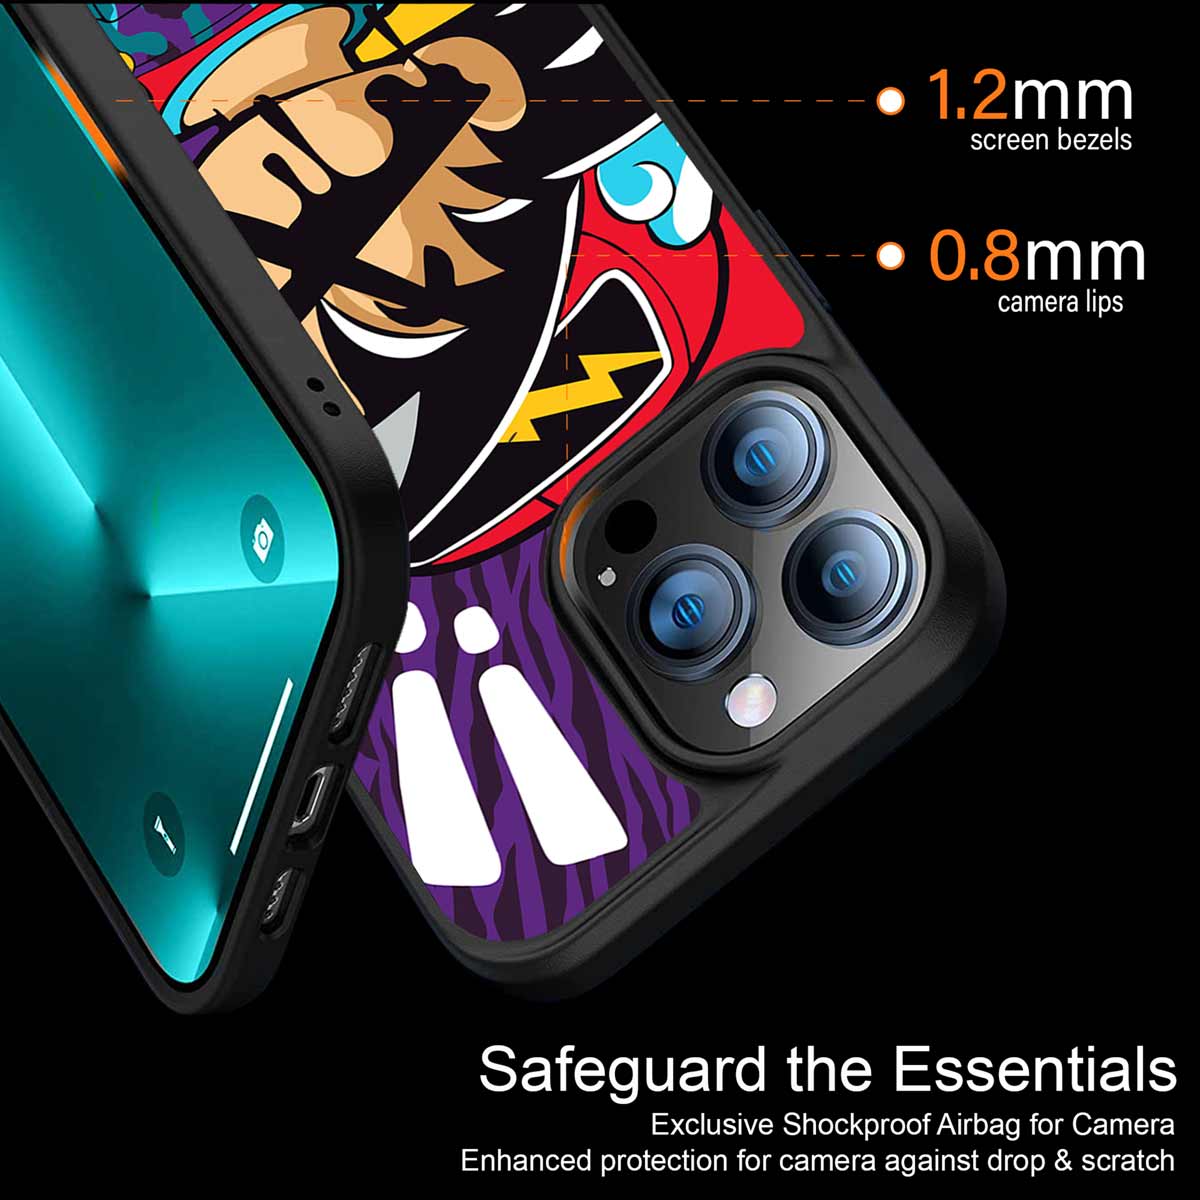 Dragon Ball Z Art Phone Cover | MagSafe Case